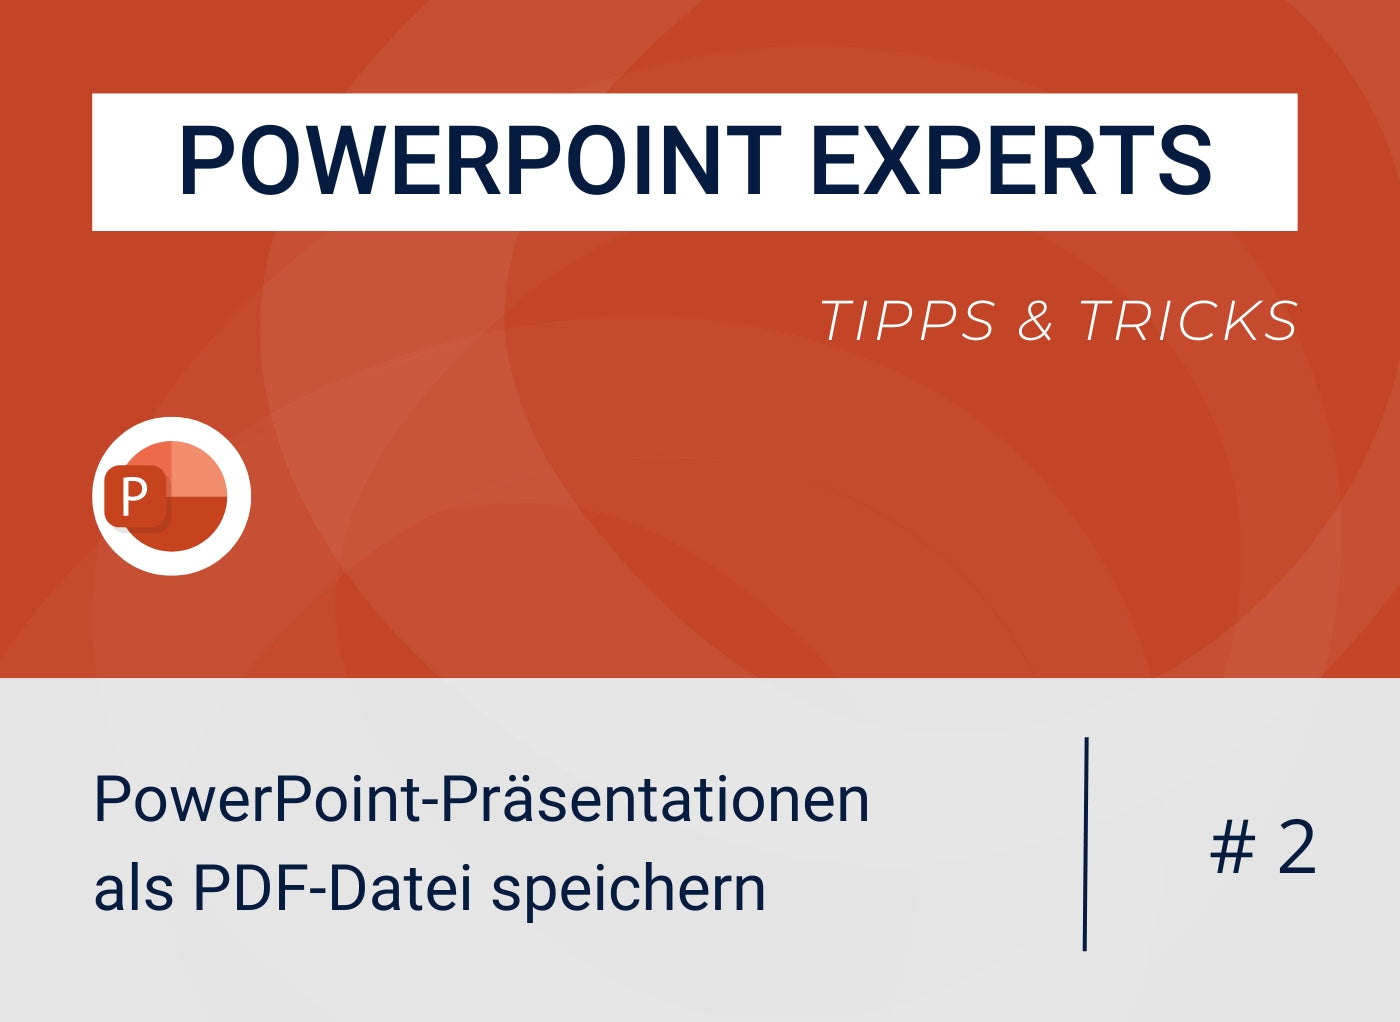 PowerPoint-Präsentationen als PDF-Datei speichern